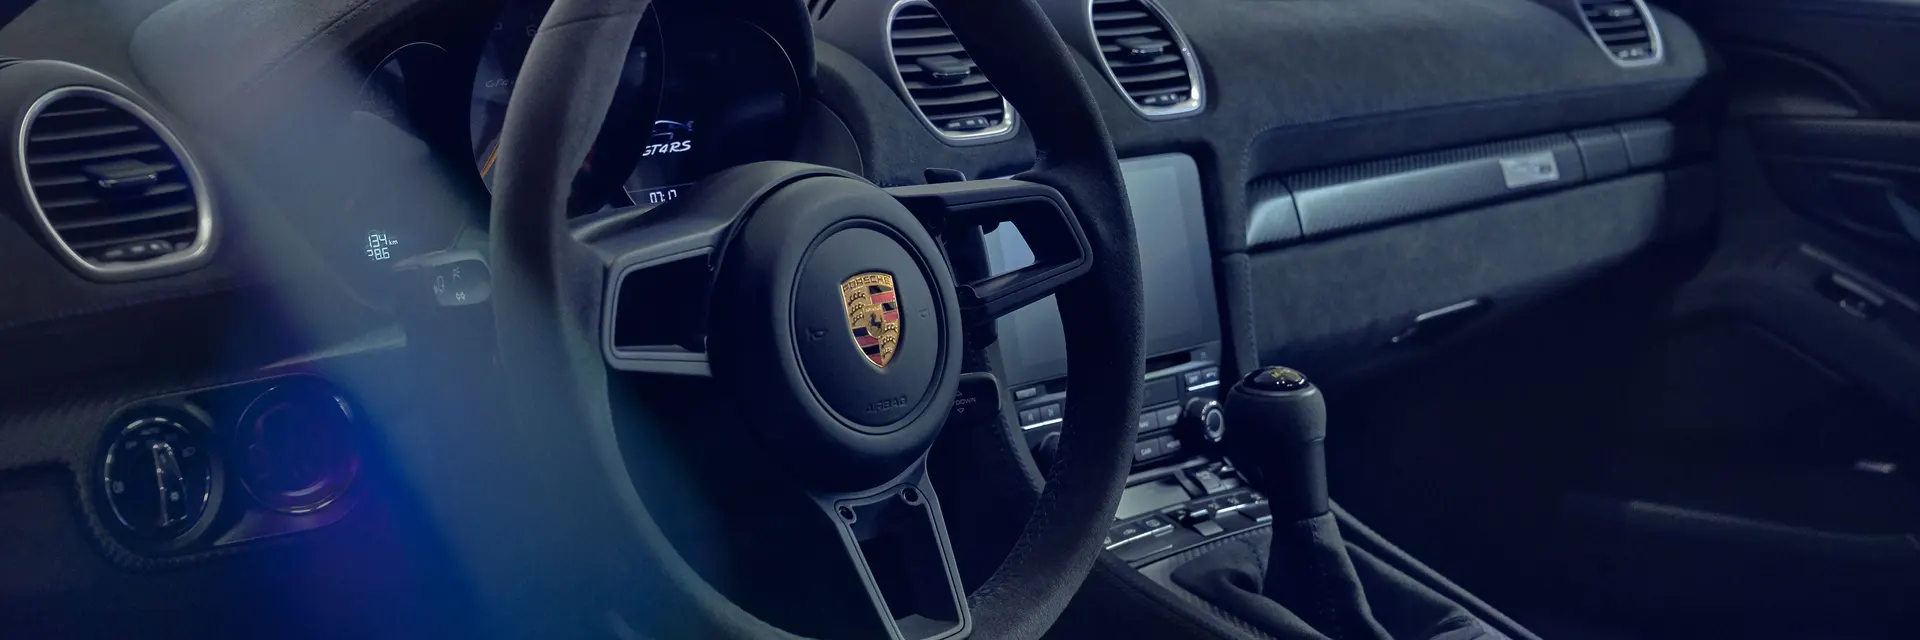 Porsche - Motor sporlarina özgü malzemeler artik elinizin altında.